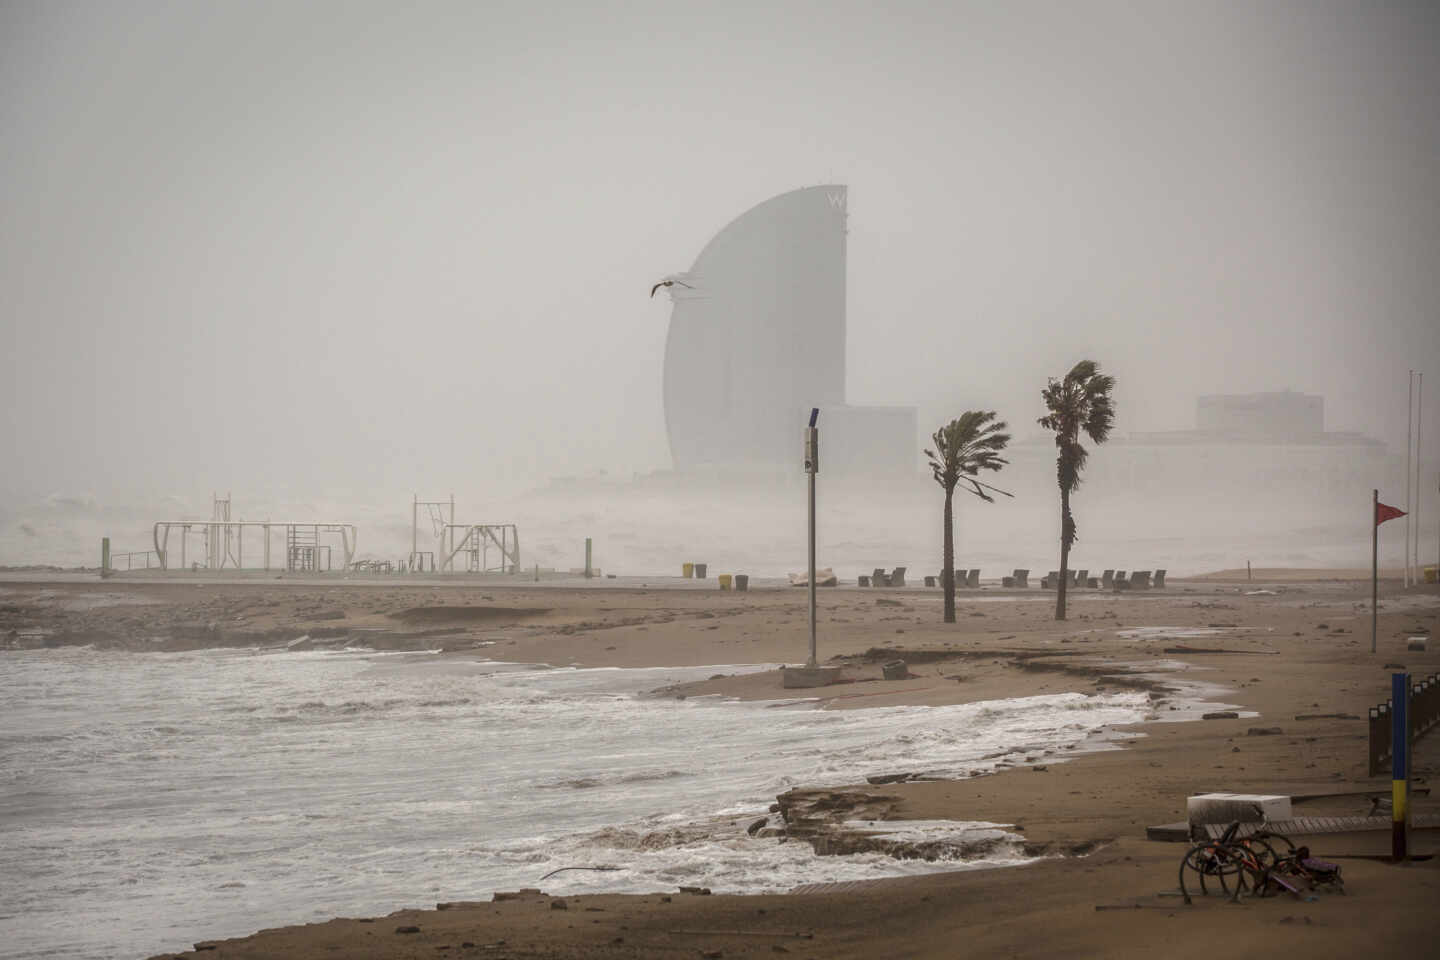 Valencia, Cataluña y Baleares, en alerta naranja por viento y olas de hasta cuatro metros